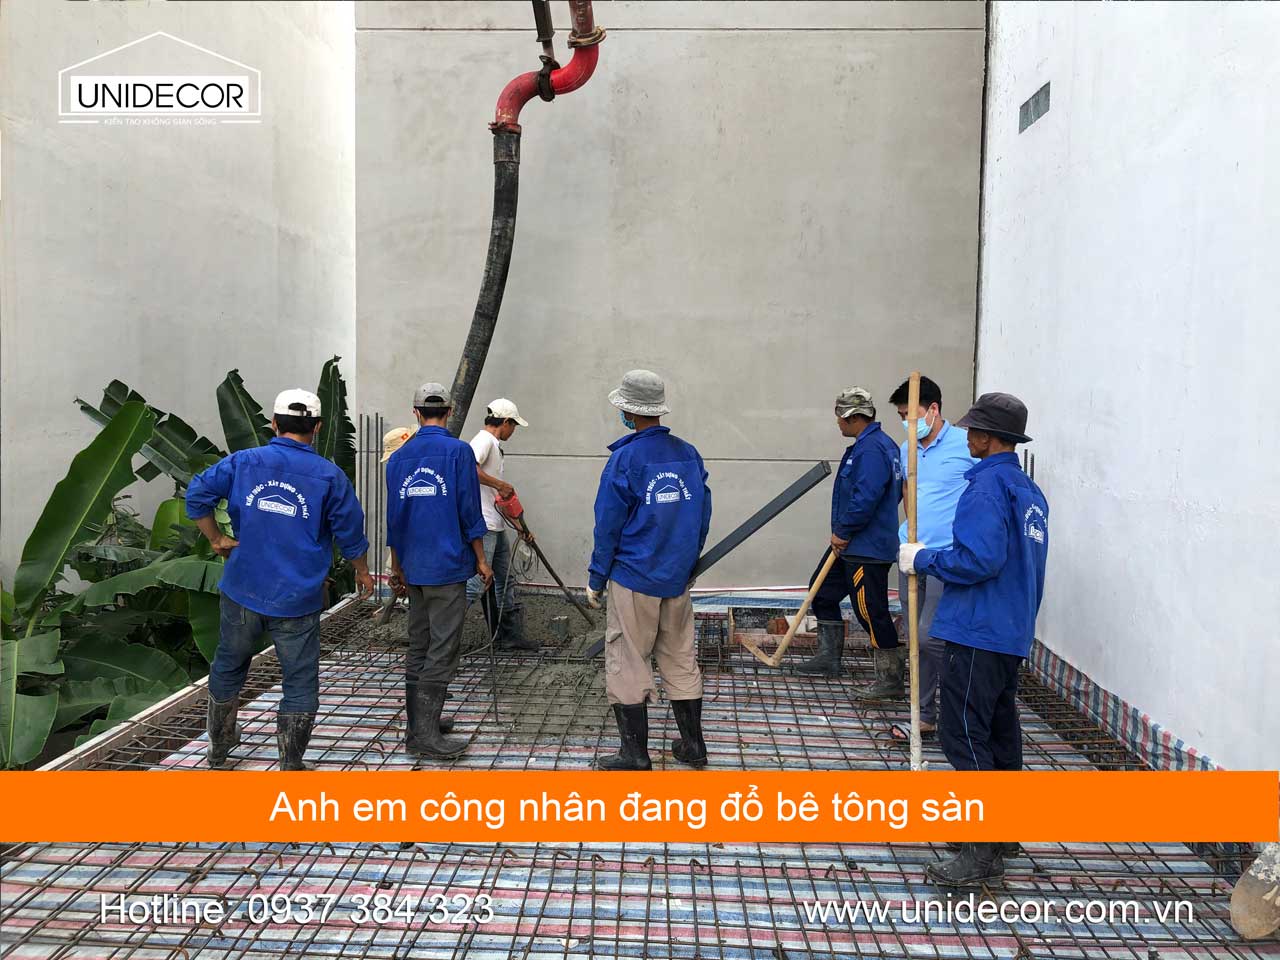 Anh em đội thợ "tuyển" đổ bê tông tươi nhà 3 tầng tại khu Chí Linh, Tp Vũng Tàu